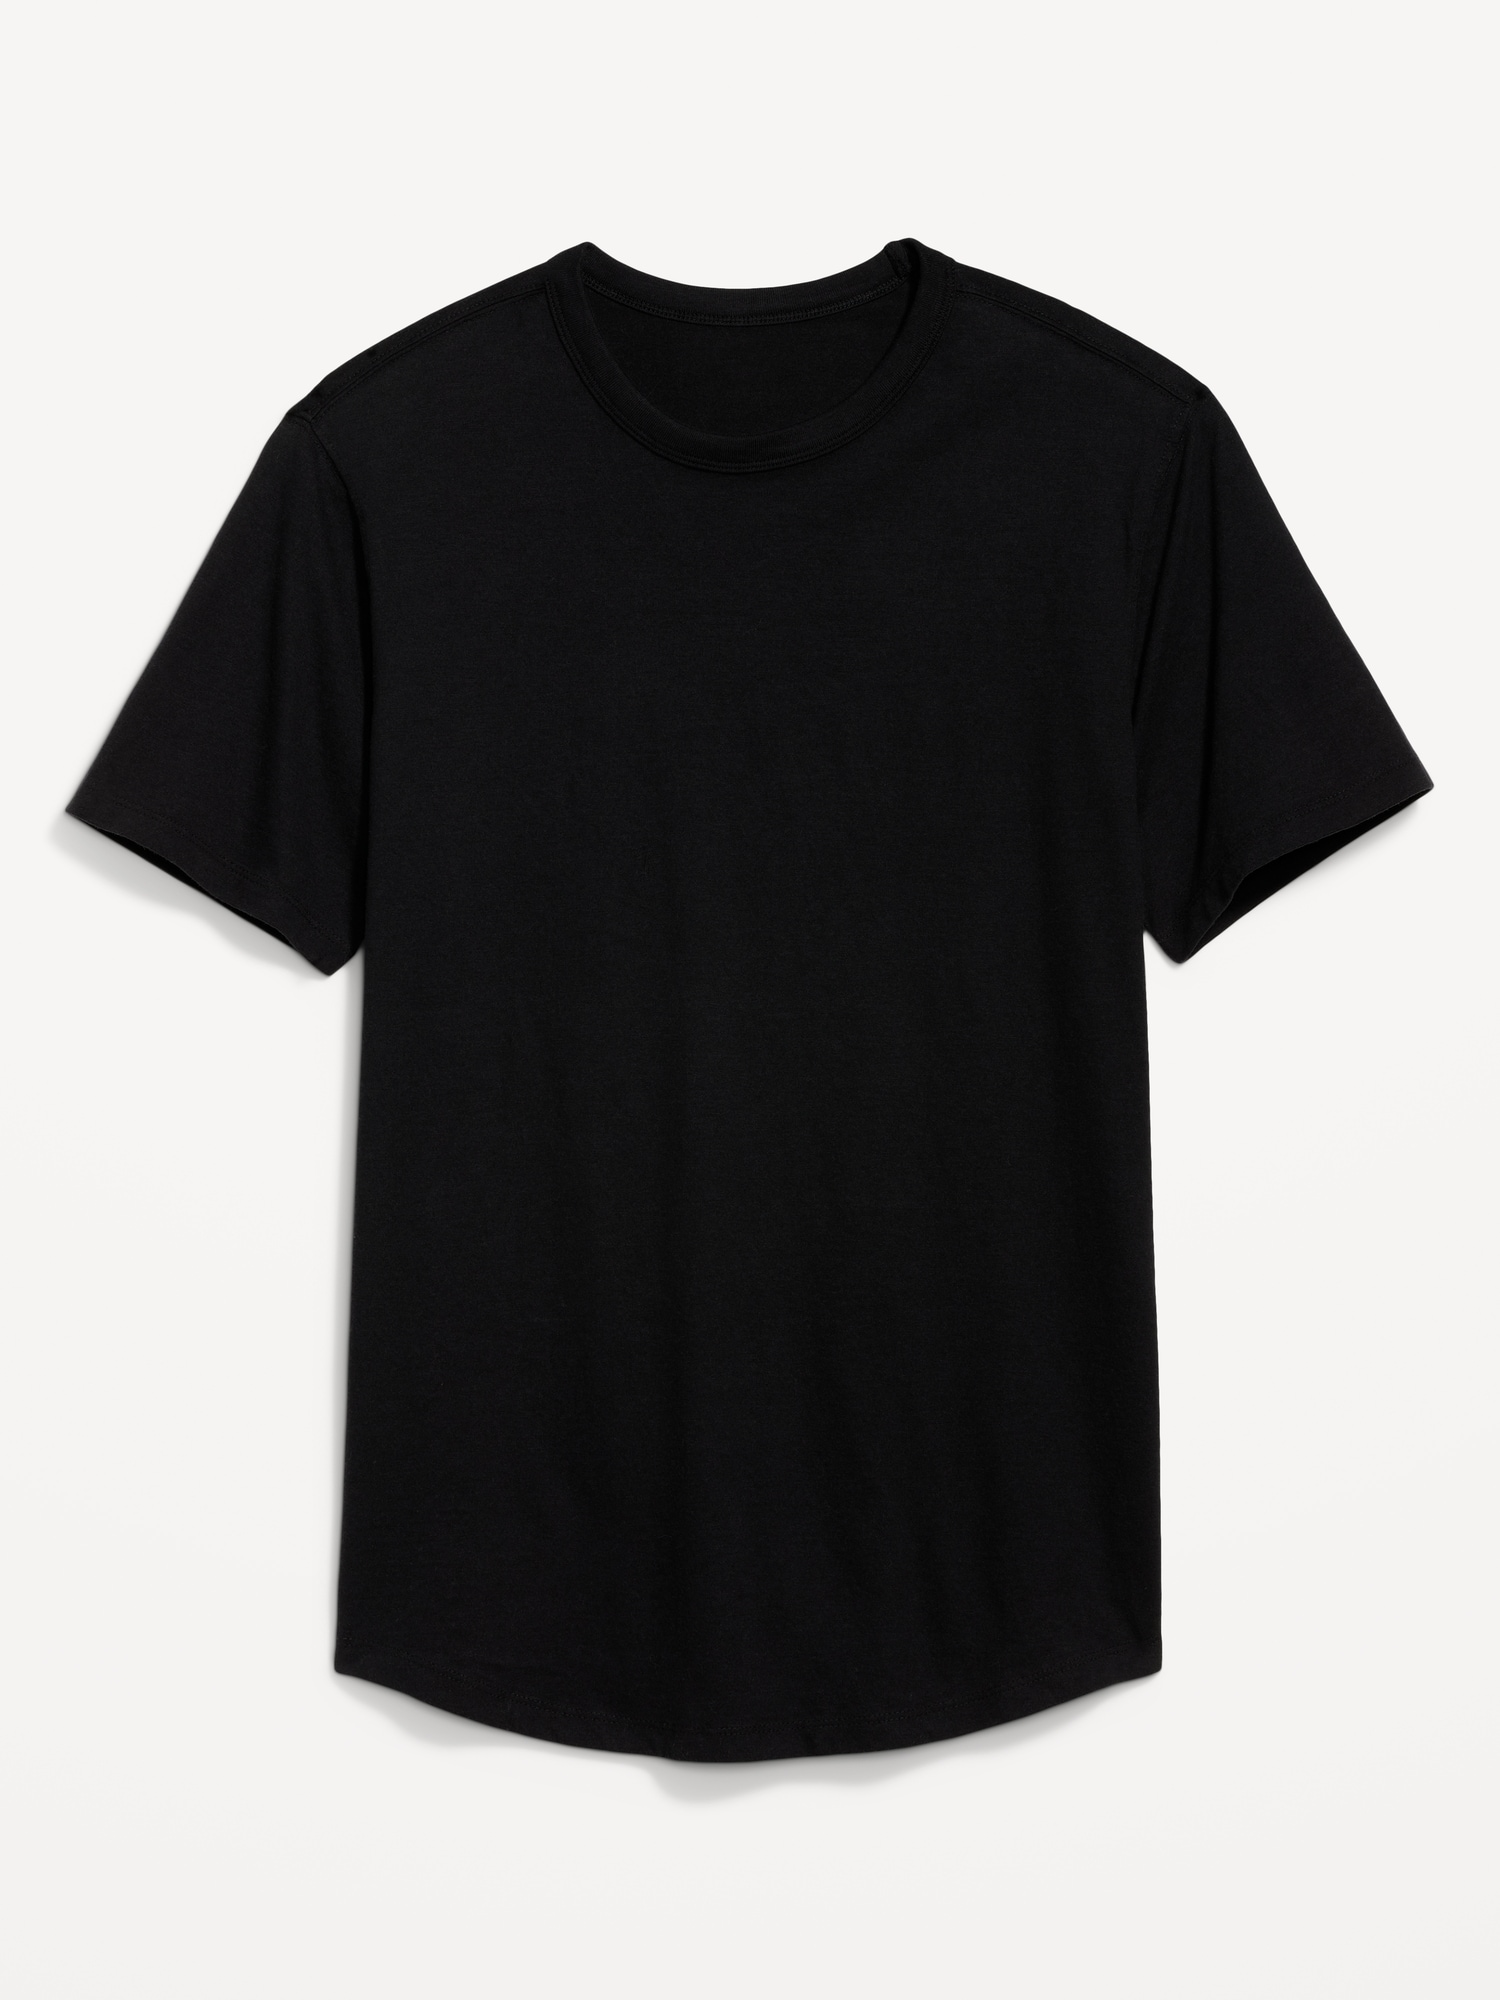 Soft-Washed Curved-Hem T-Shirt for Men | Old Navy